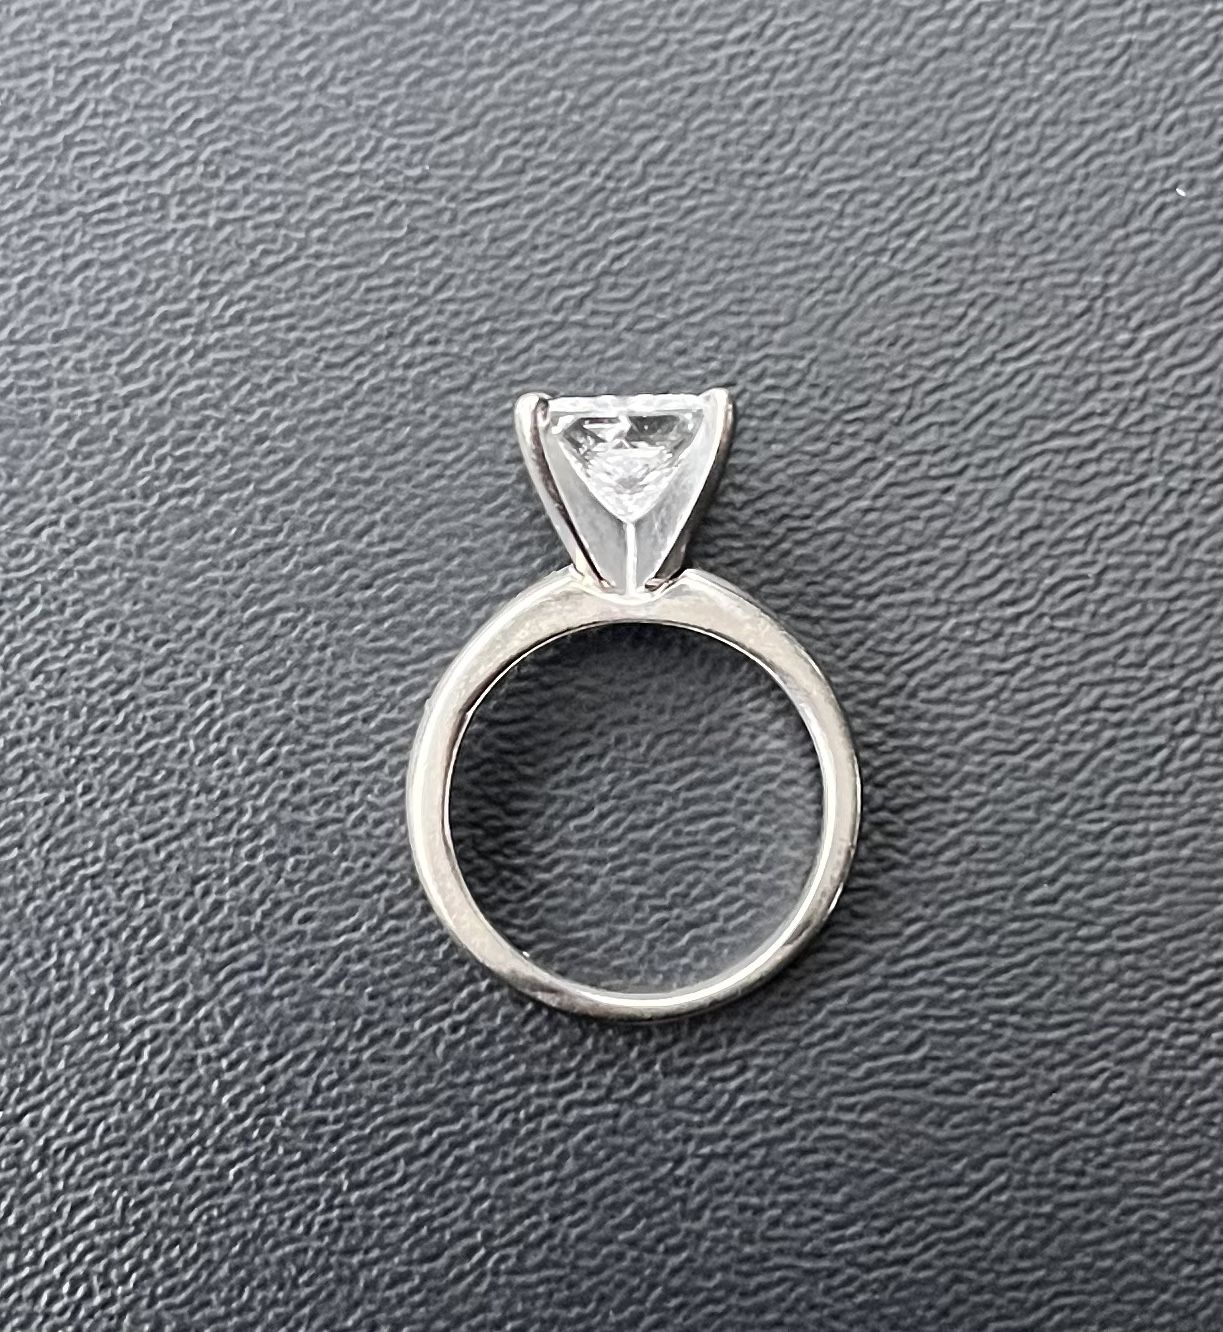 Wedding Ring. 14k White Gold and A moissanite gem